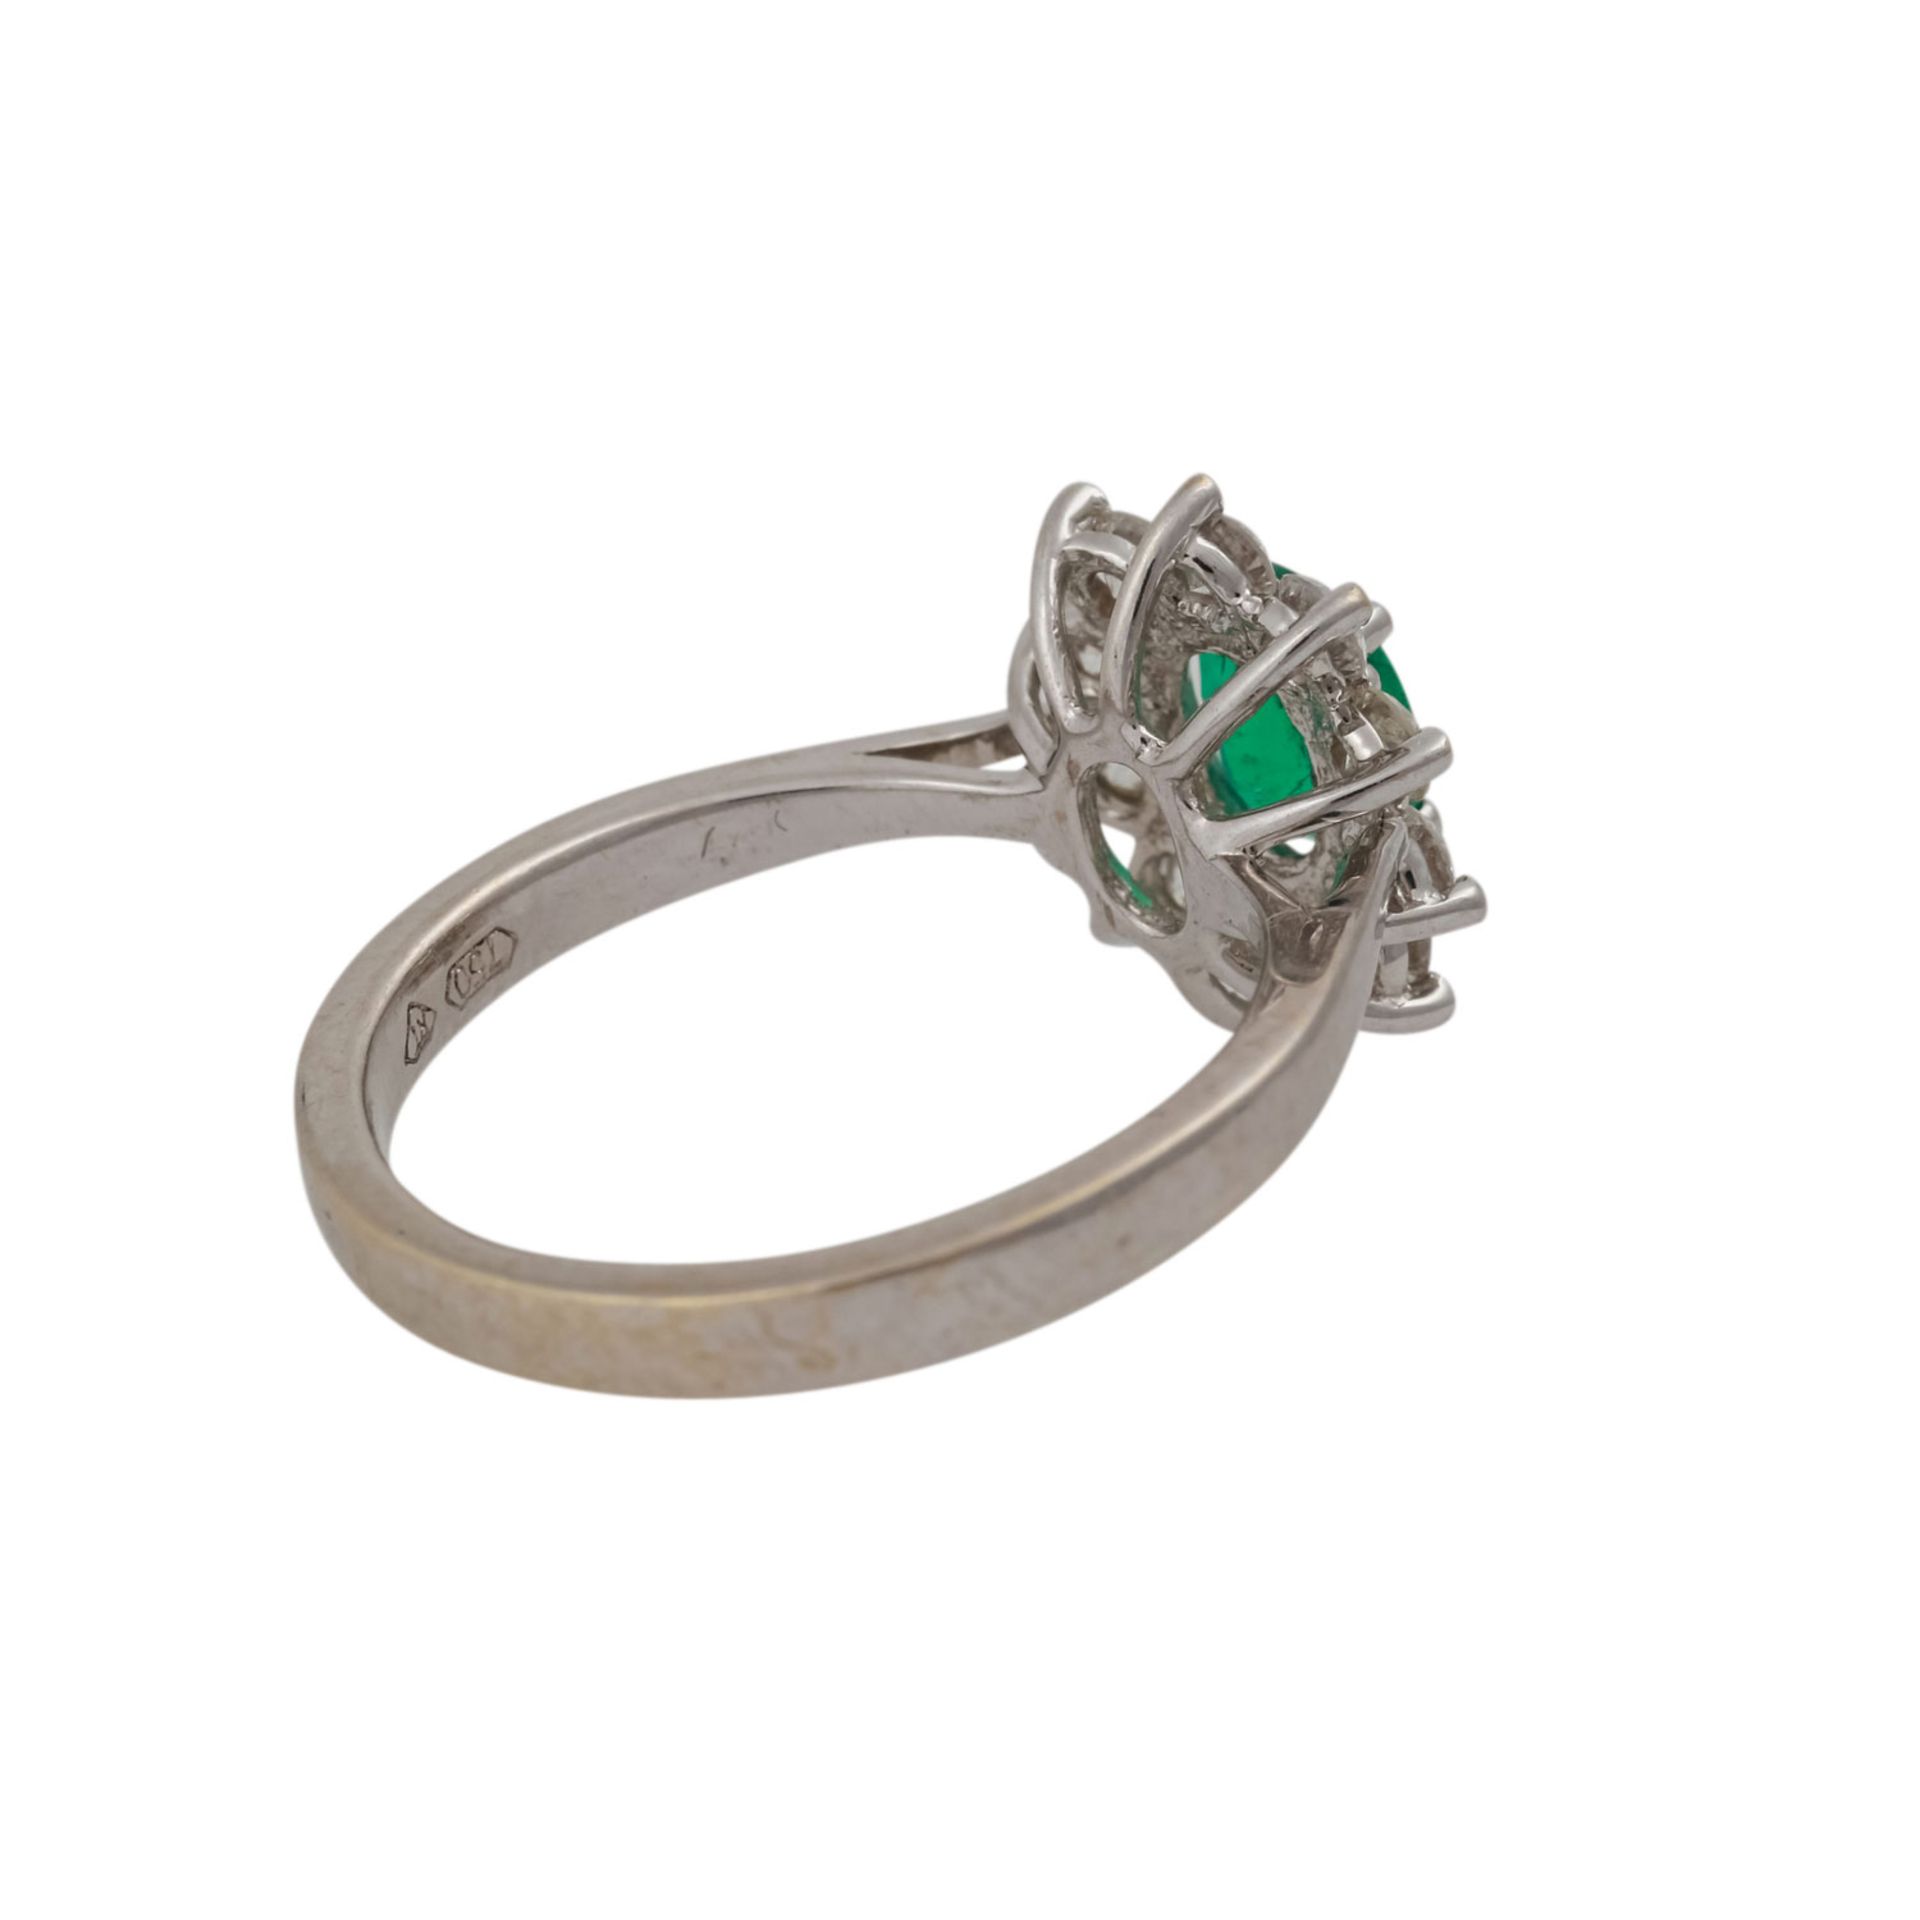 Ring mit Smaragd und Brillantenvon zus. ca. 0,60 ct, gute Farbe u. Reinheit, WG 18K, RW: 50, 2. H. - Bild 3 aus 4